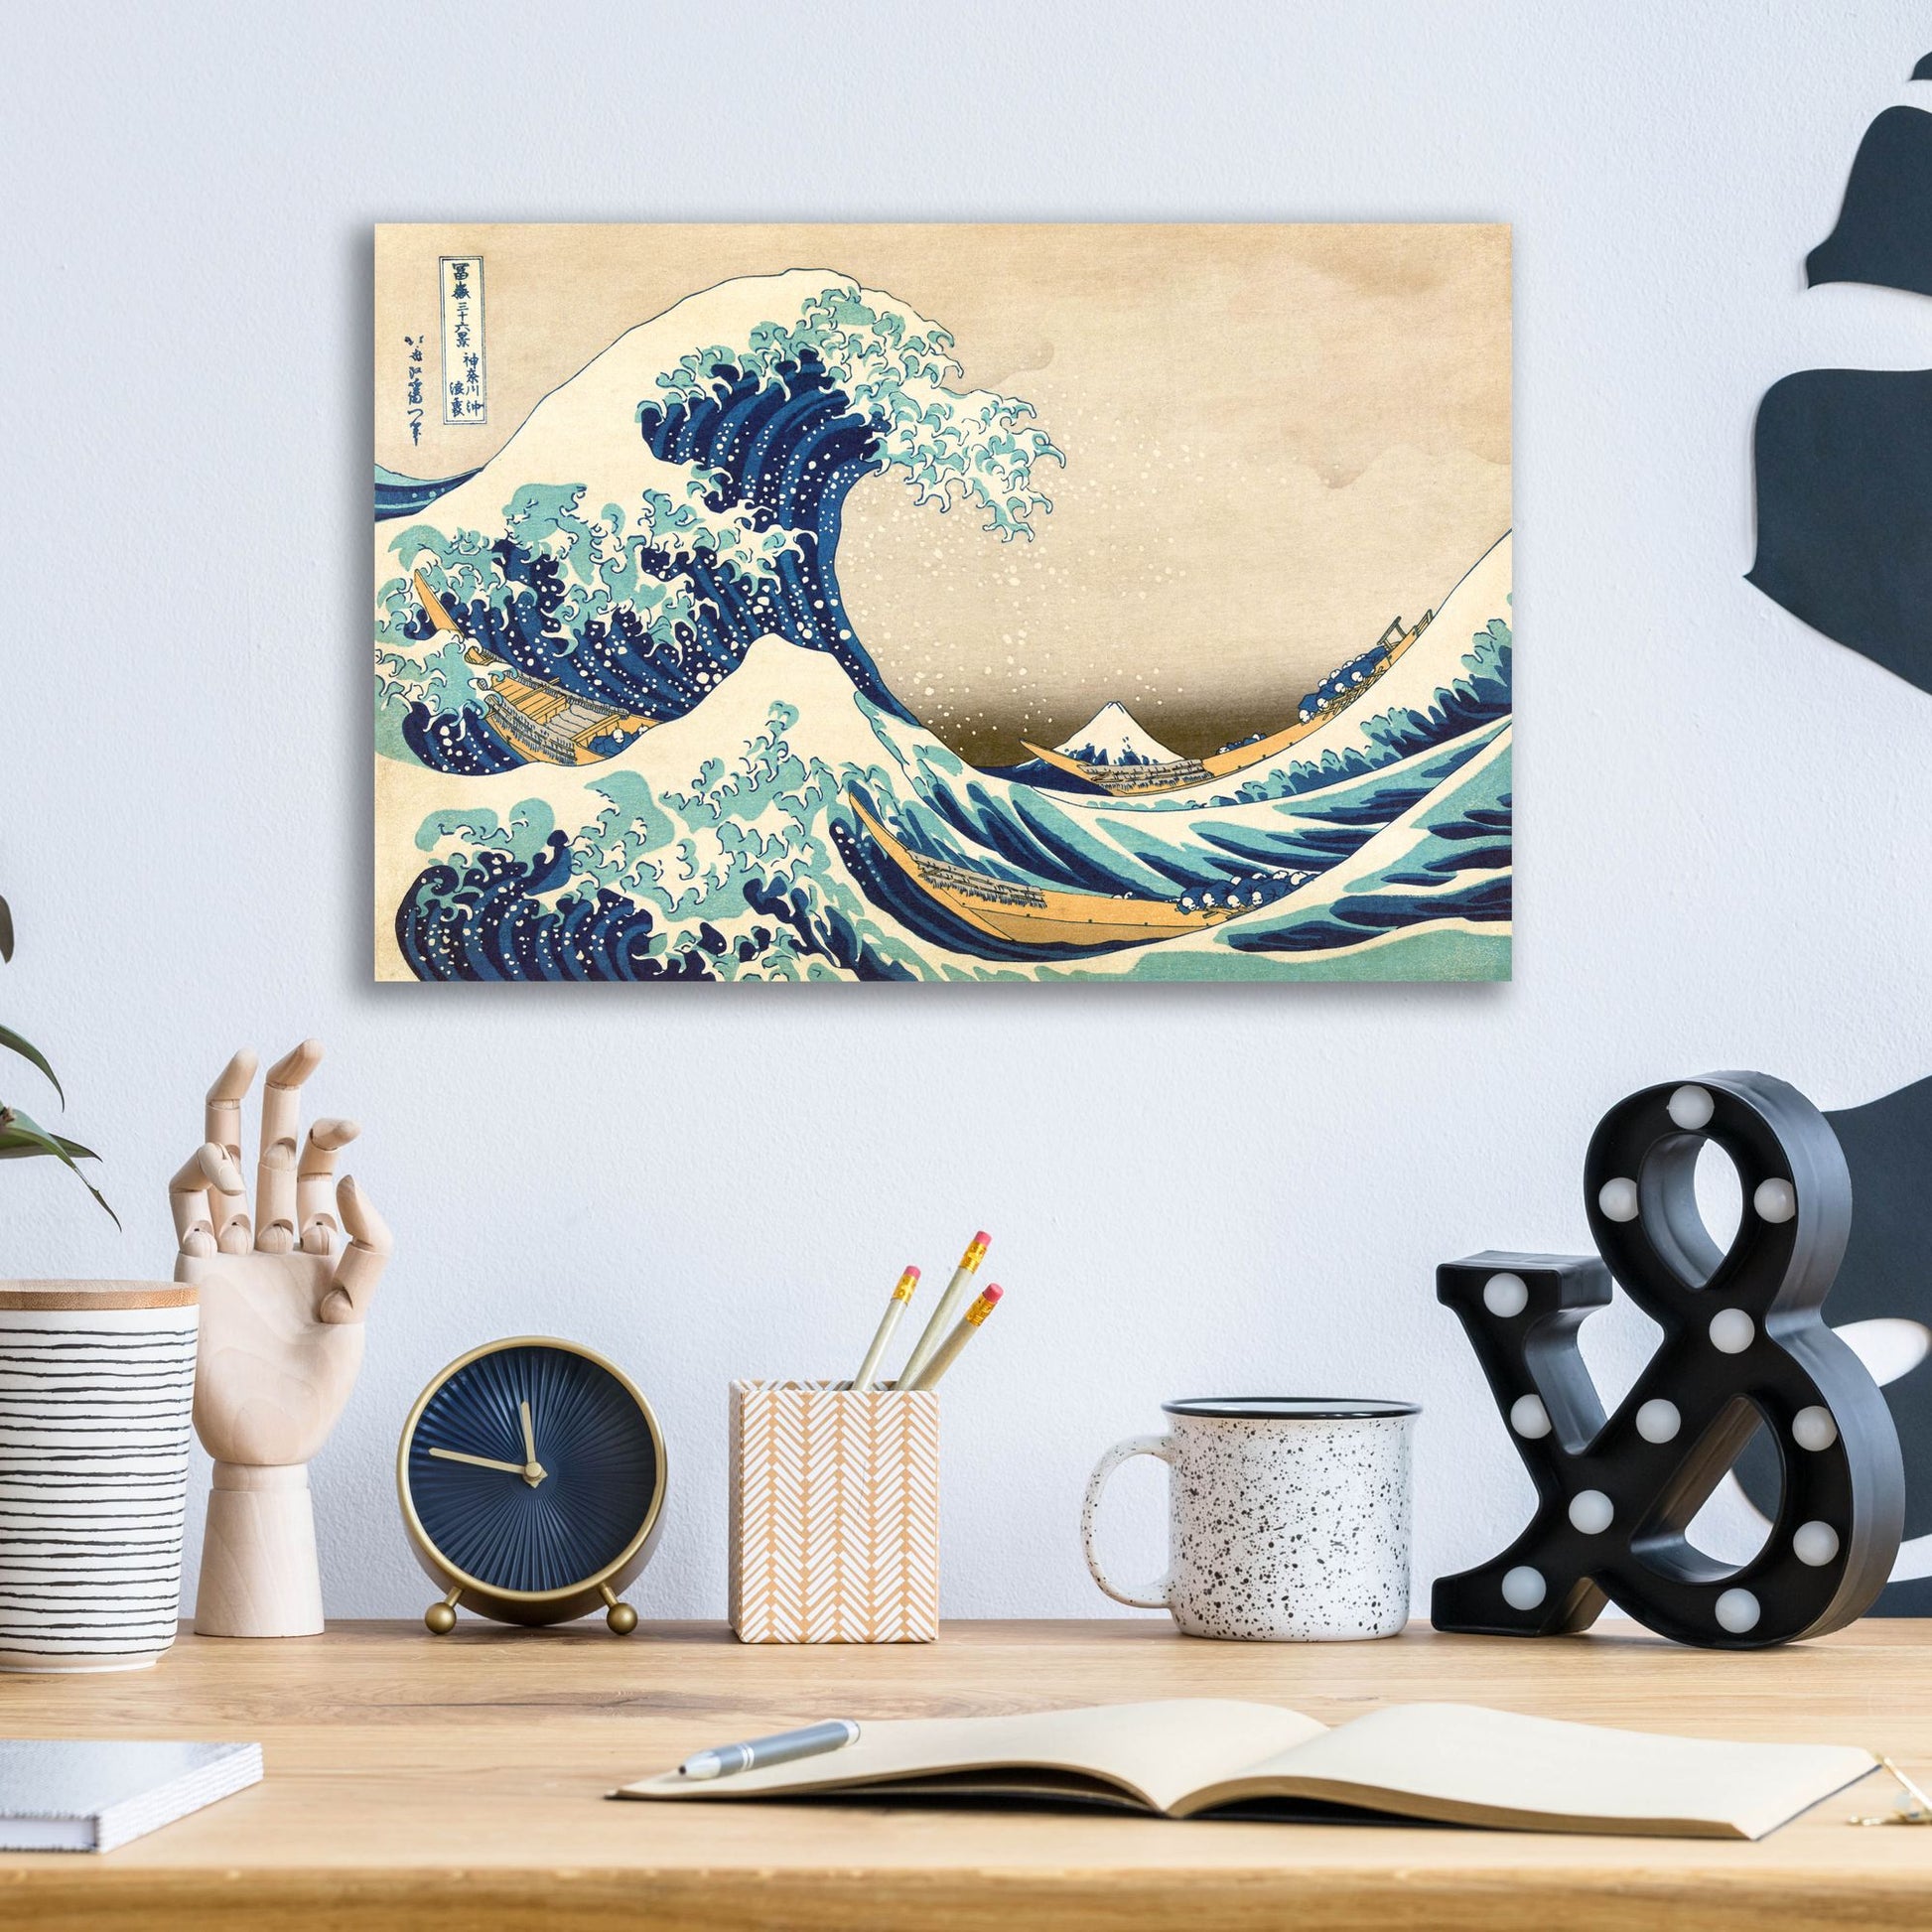 Epic Art 'The Great Wave Off Kanagawa' by Katsushika Hokusai, Acrylic Glass Wall Art,16x12